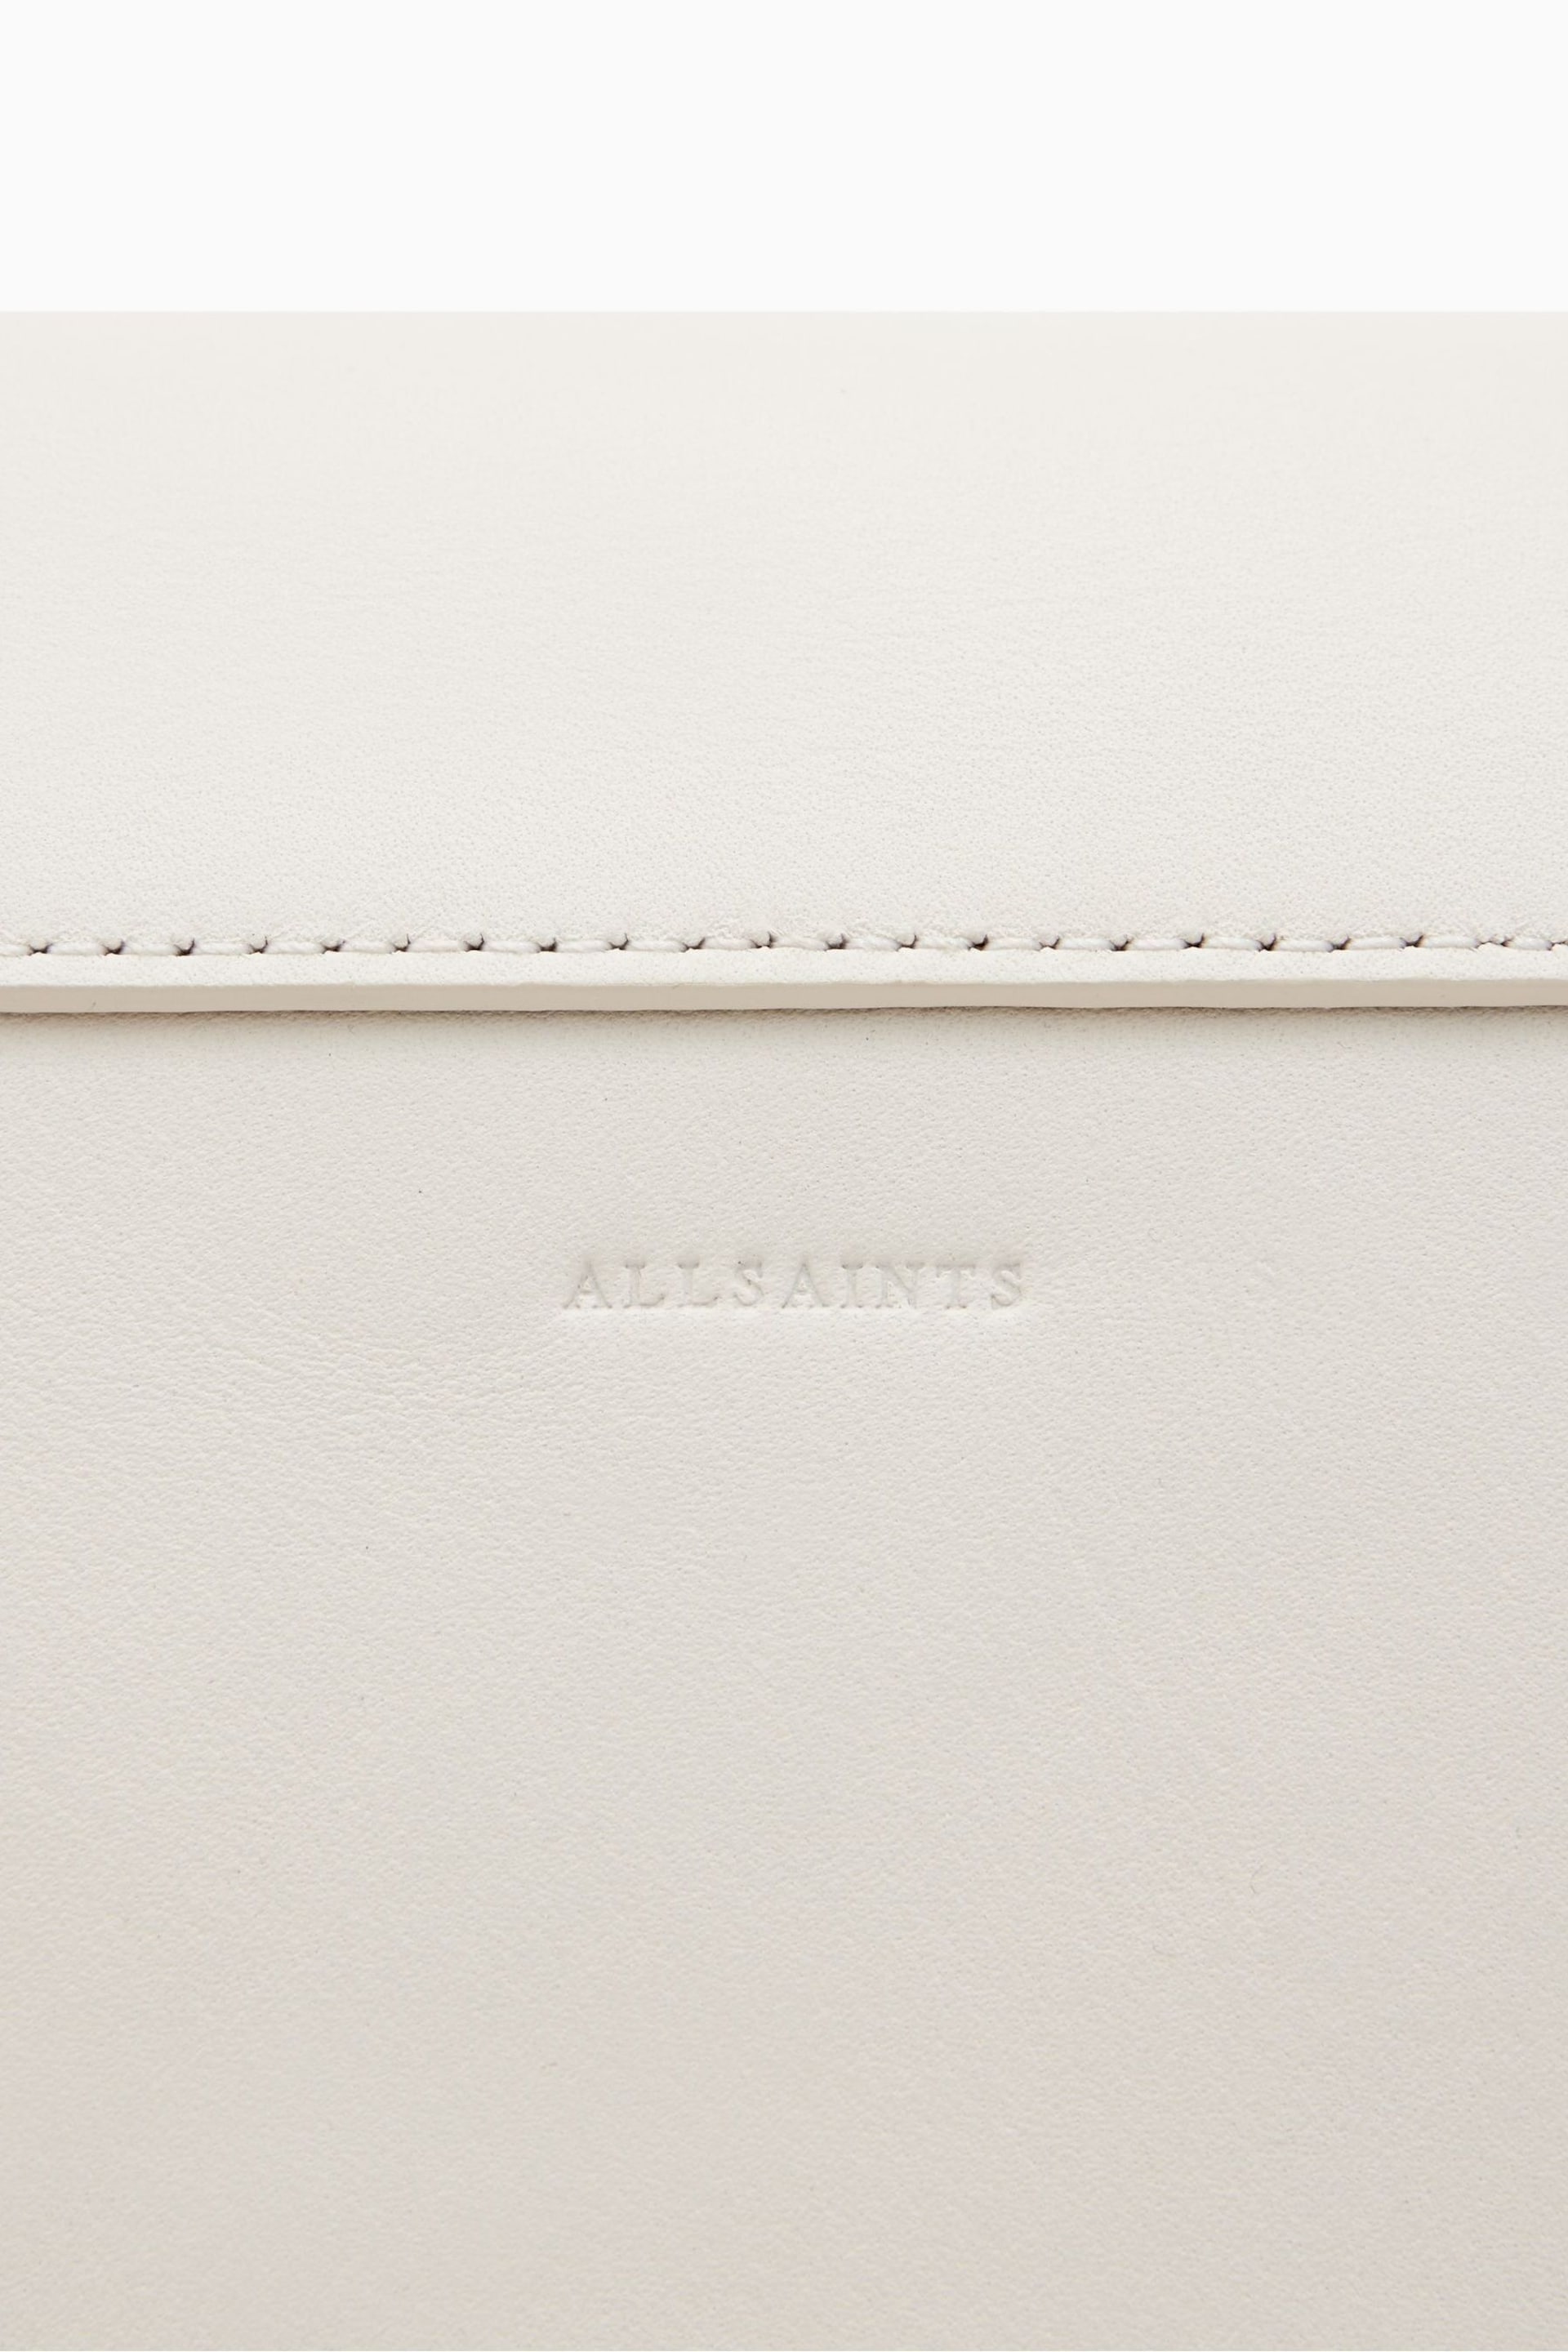 AllSaints White Celeste Cross-Body Bag - Image 8 of 8